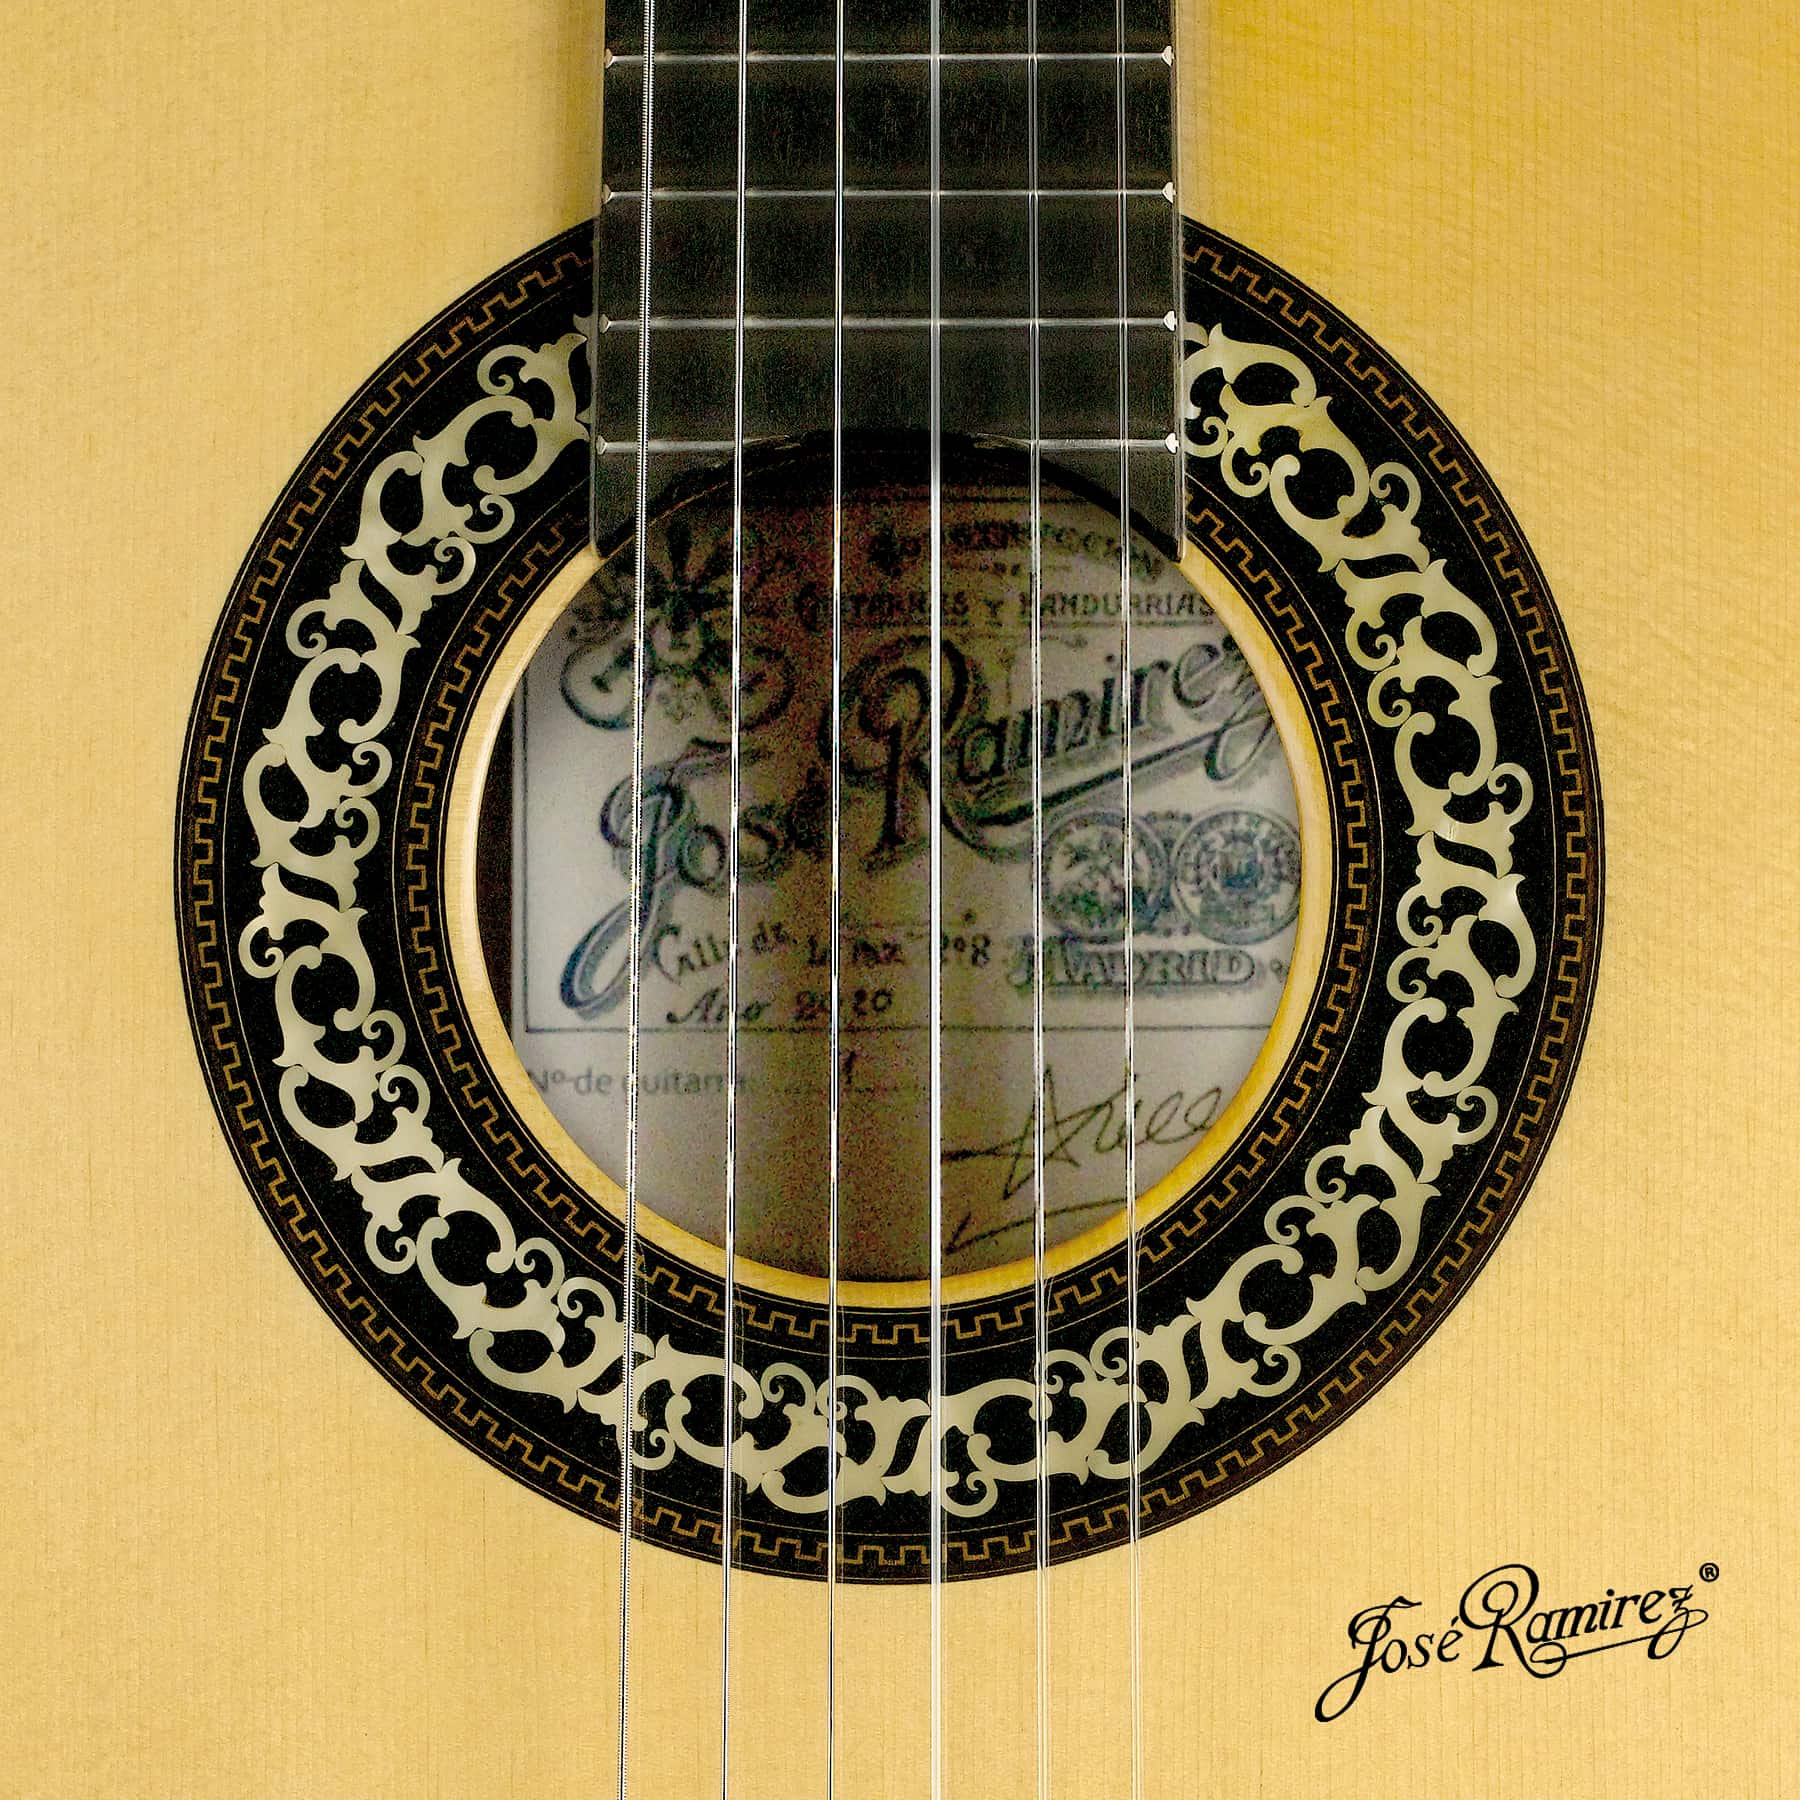 Mouth of the Mangoré guitar.